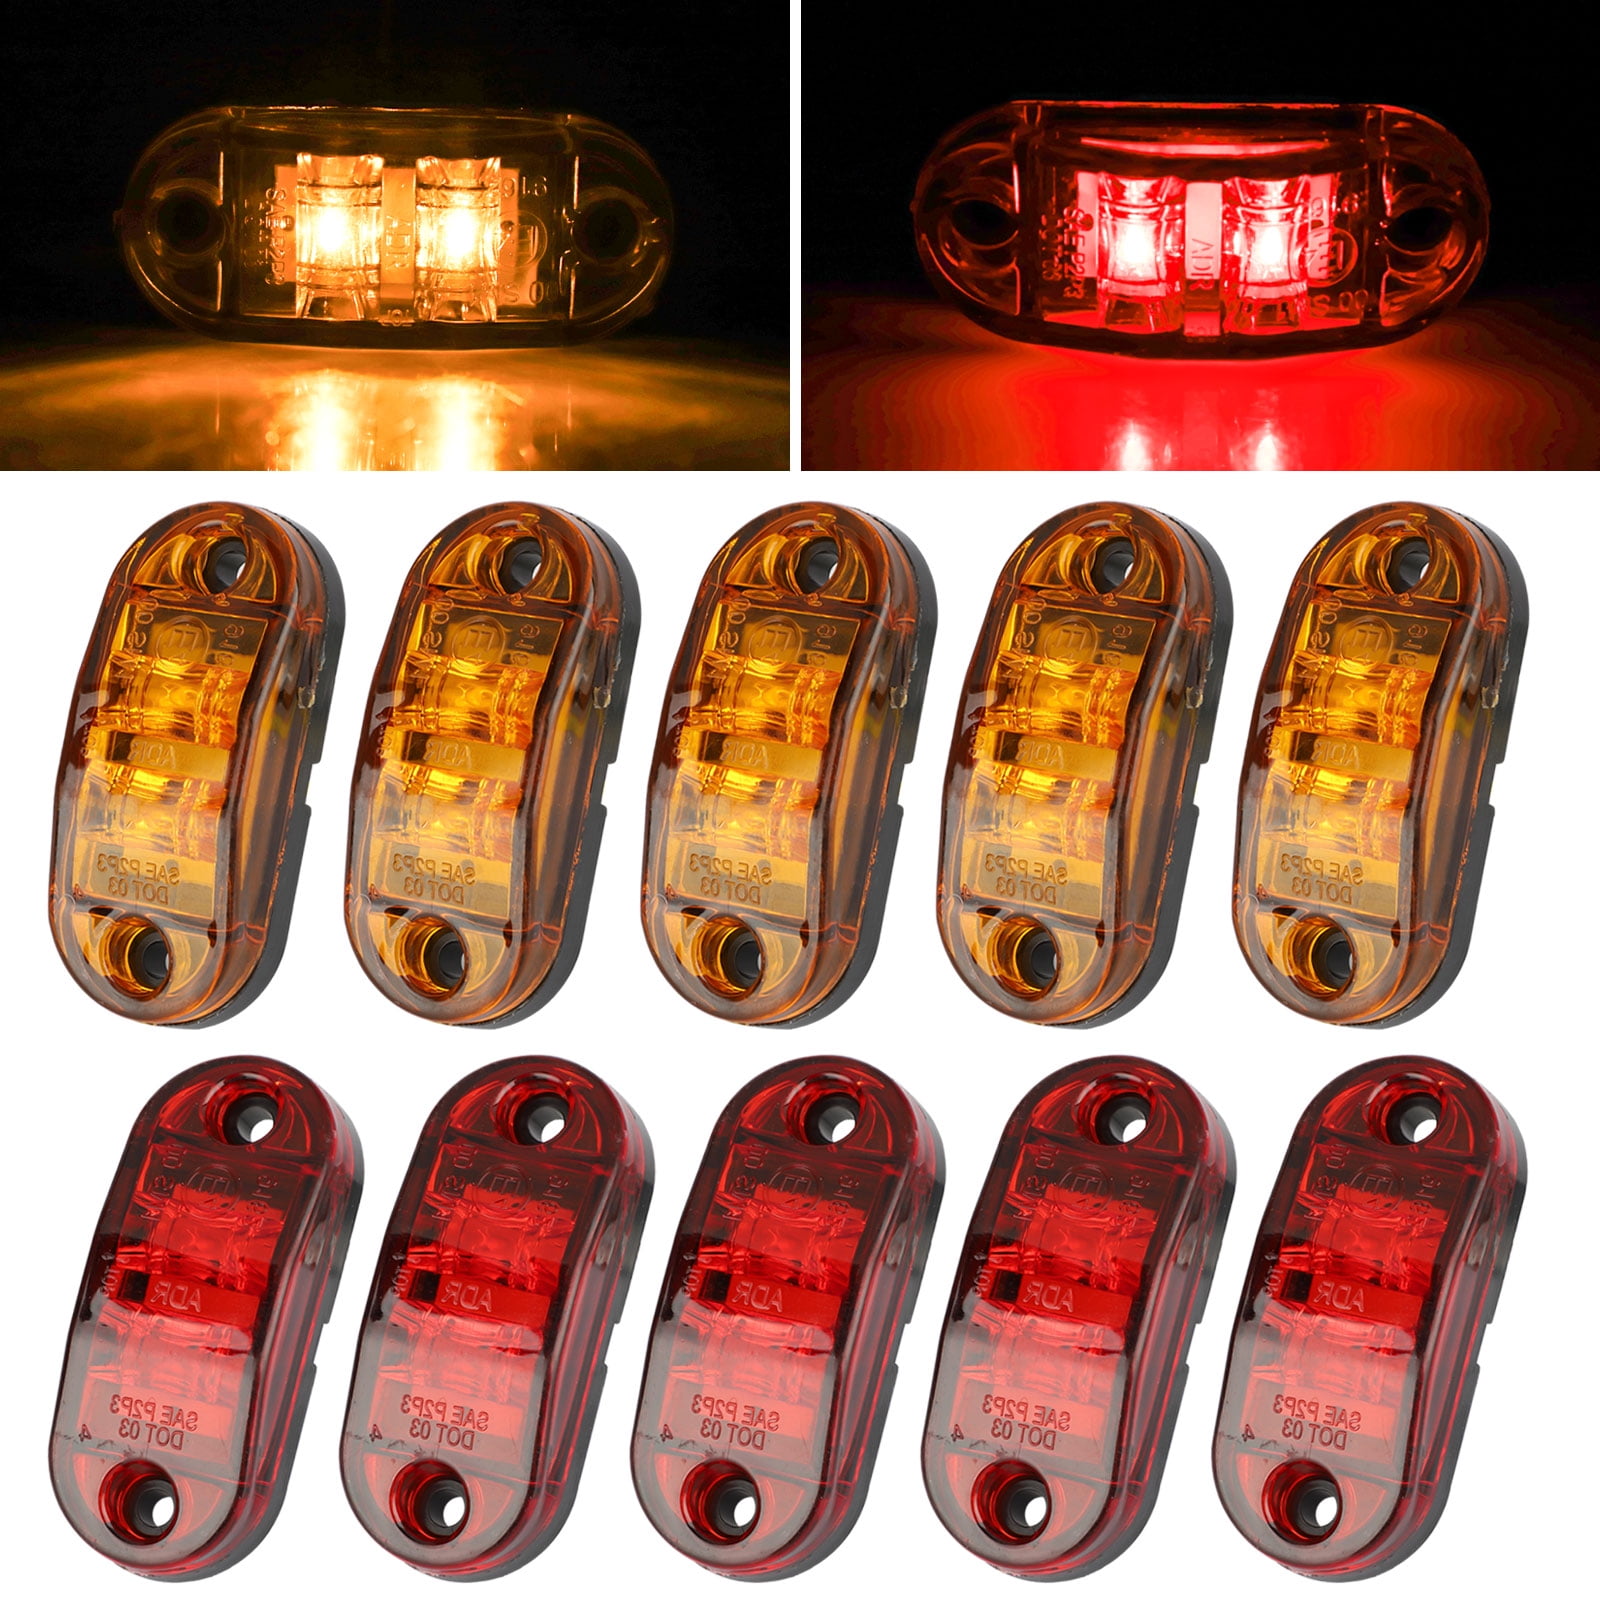 Four 5” Green 12 Led Side Marker Lights Bar Lamp For Trailer Camper Cab 12 Volts 